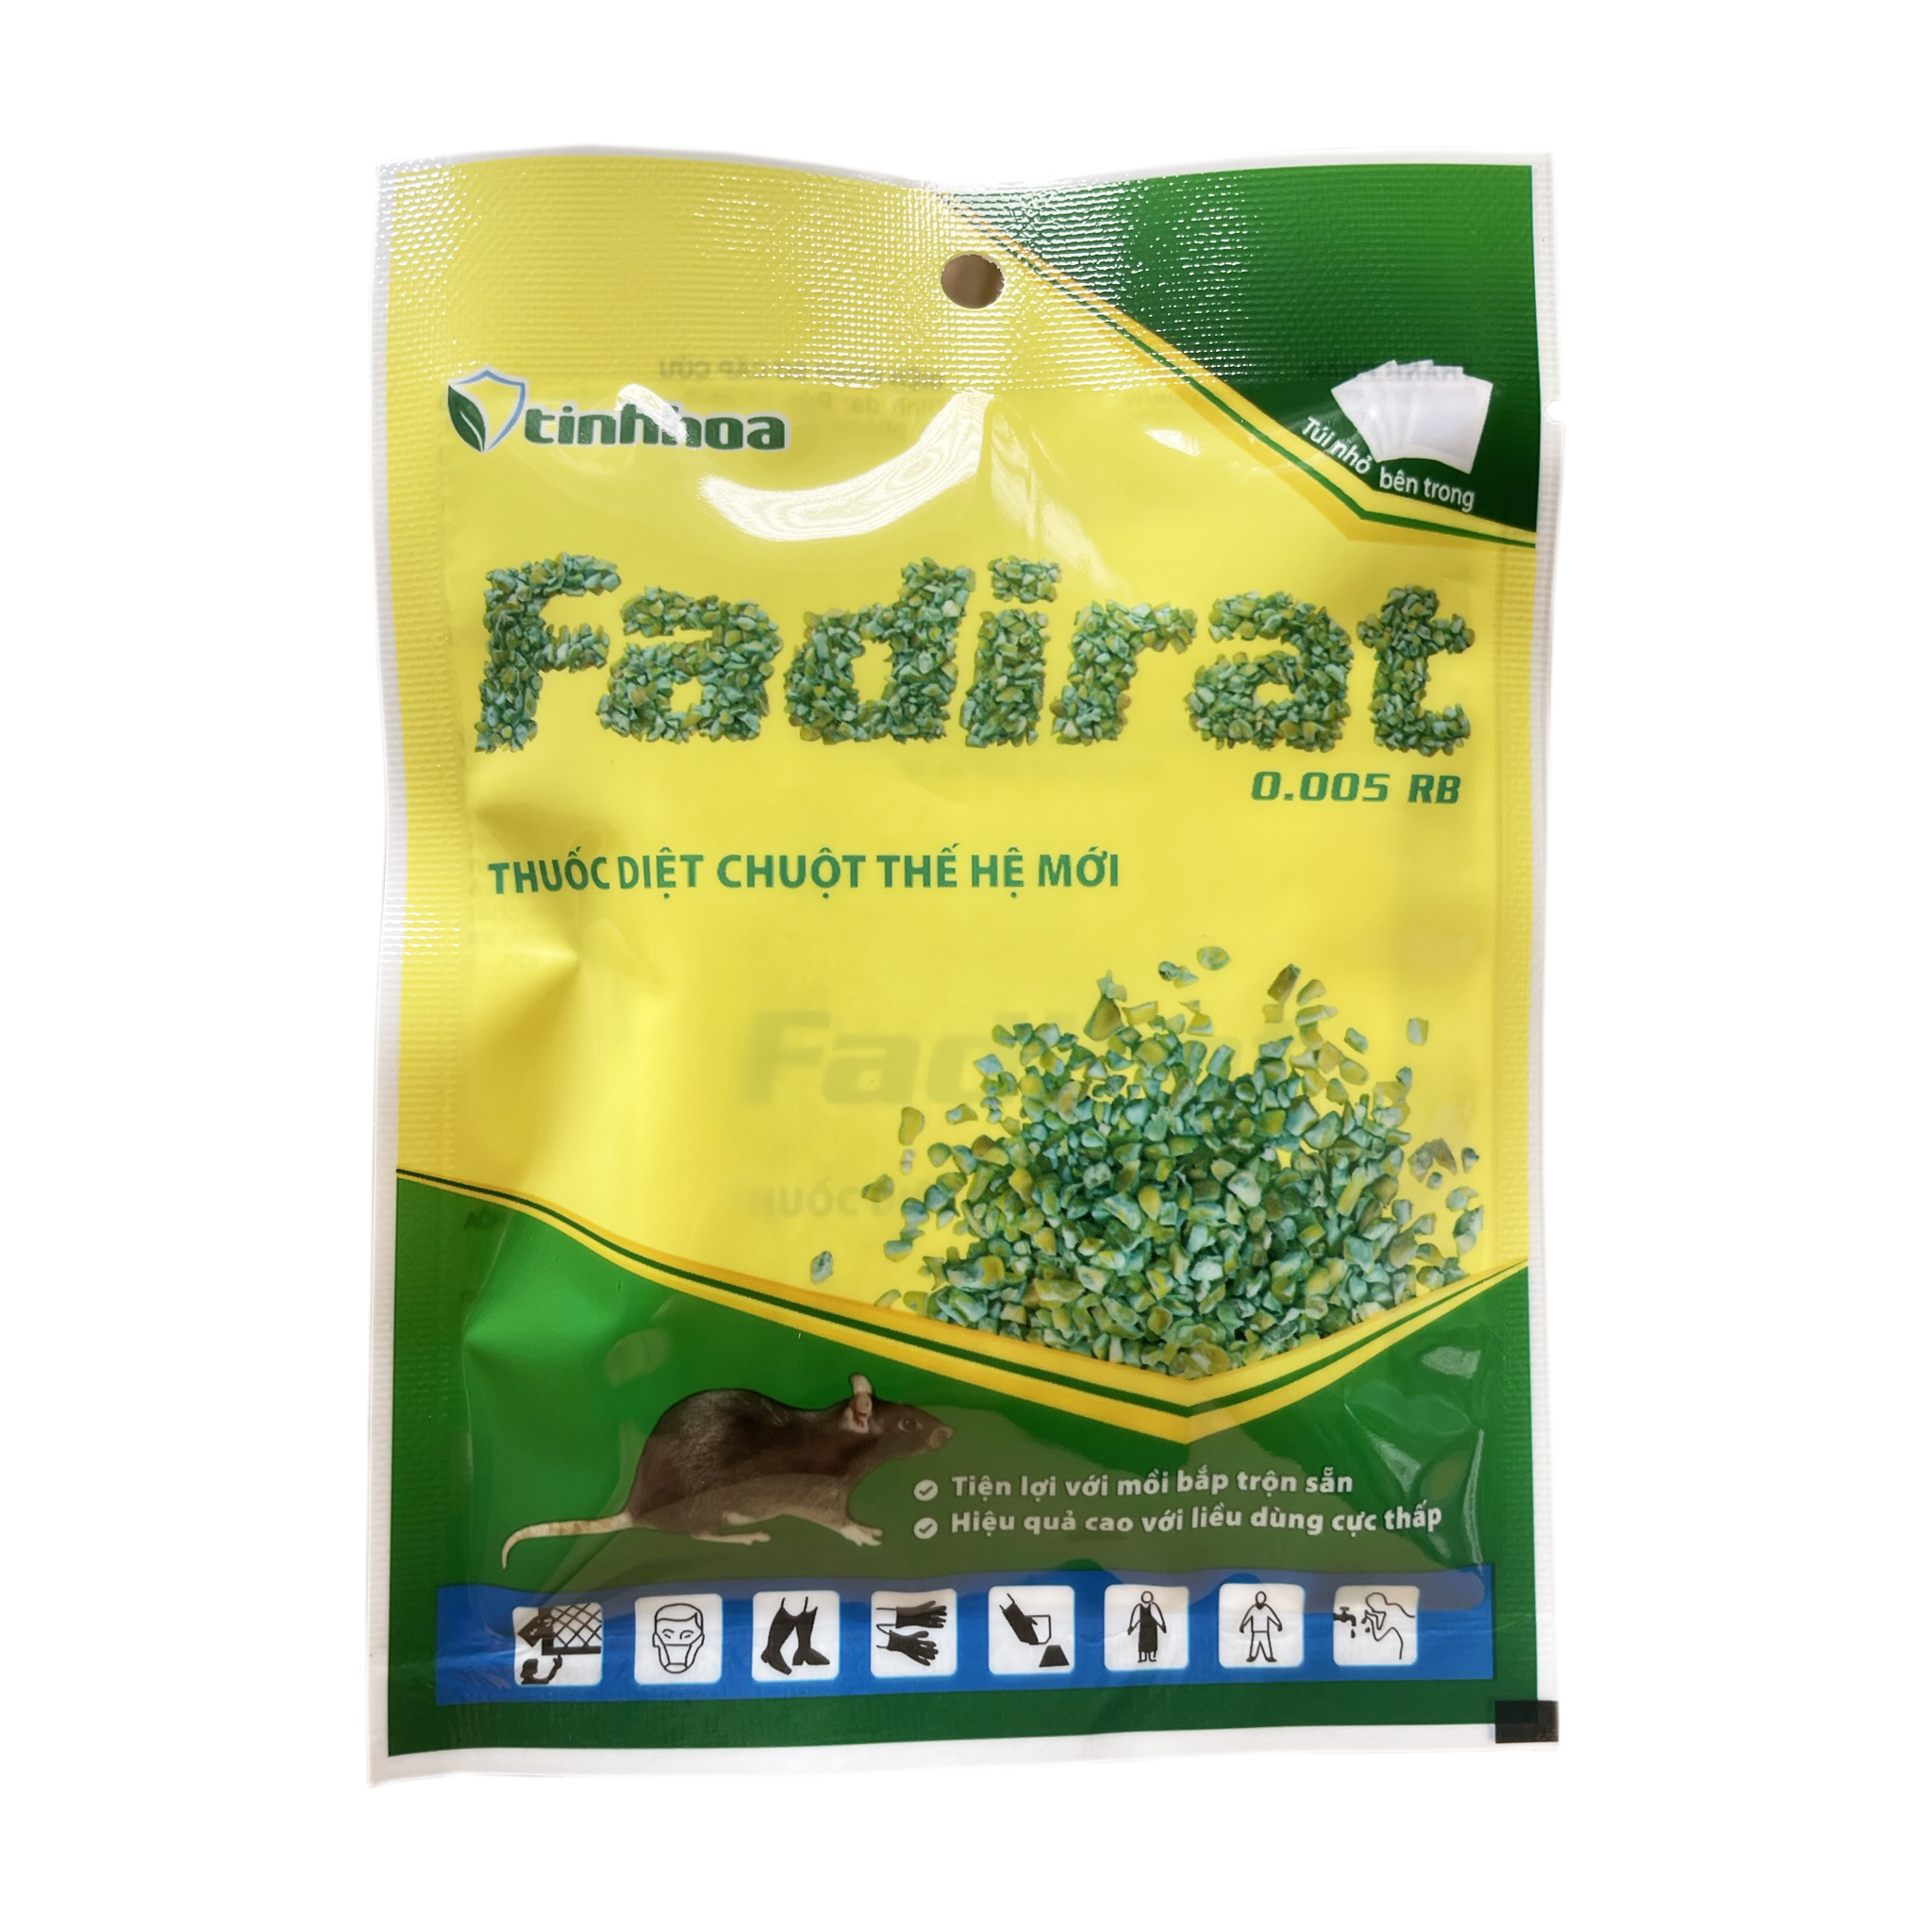 Thuốc diệt chuột thế hệ mới FADIRAT 0.005 RB - Tiện lợi với mồi bắp trộn sẵn - Hiệu quả cao với liều dùng cực thấp (Gói 4 túi x 5g)